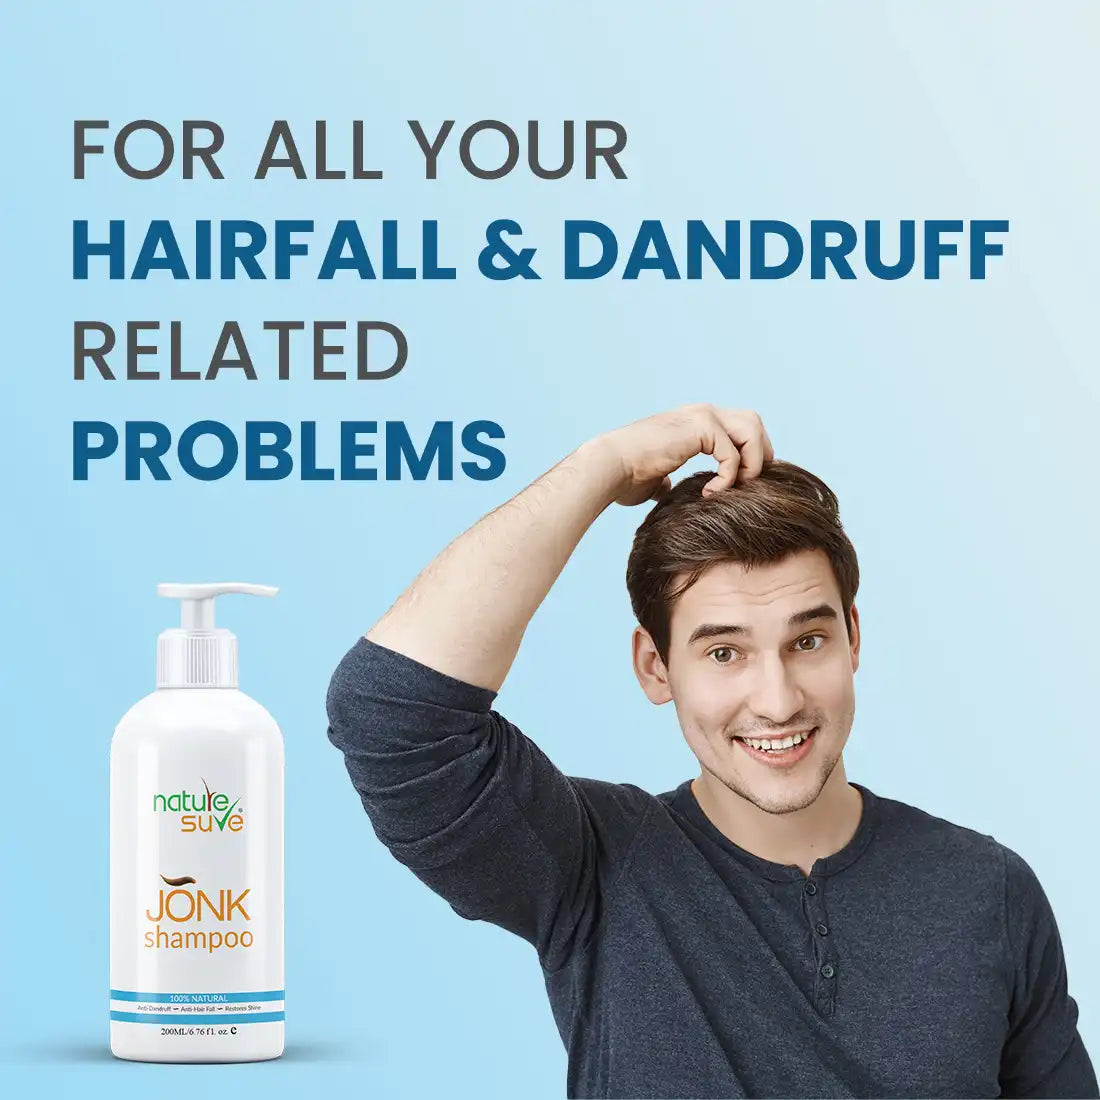 Nature Sure Jonk Shampoo Haarreinigungsmittel für Männer und Frauen (300ml)